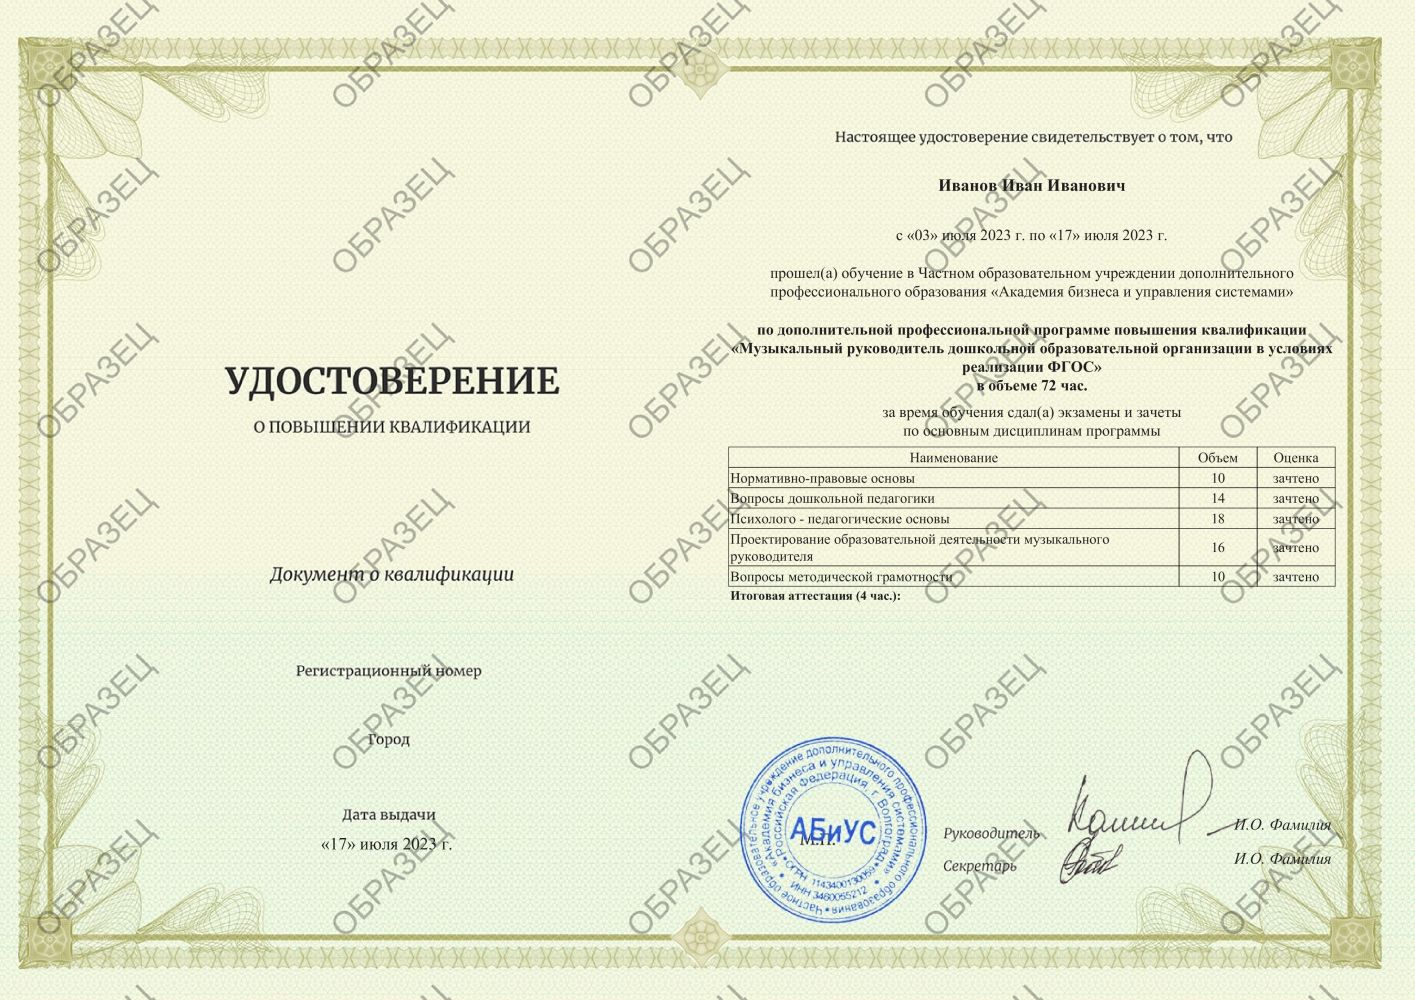 Удостоверение Музыкальный руководитель дошкольной образовательной организации в условиях реализации ФГОС 72 часа 2938 руб.